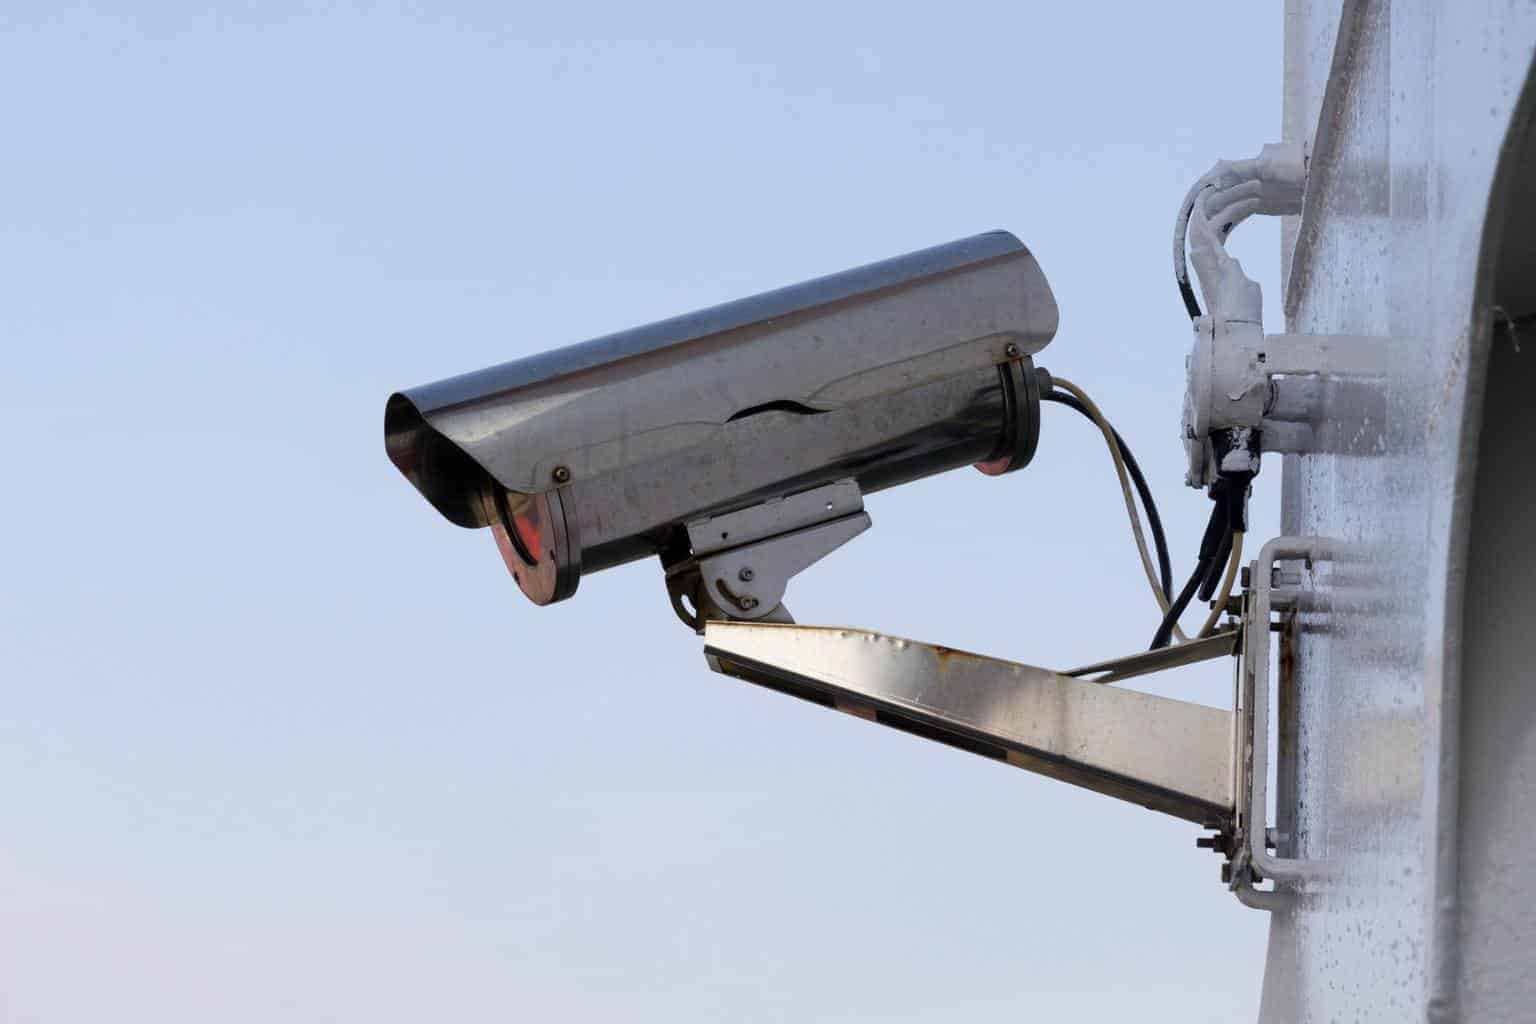 Finally Thank you Maori Întreabă expertul: suntem obligați să furnizăm înregistrările CCTV dintr-o  parcare? - Avocatoo